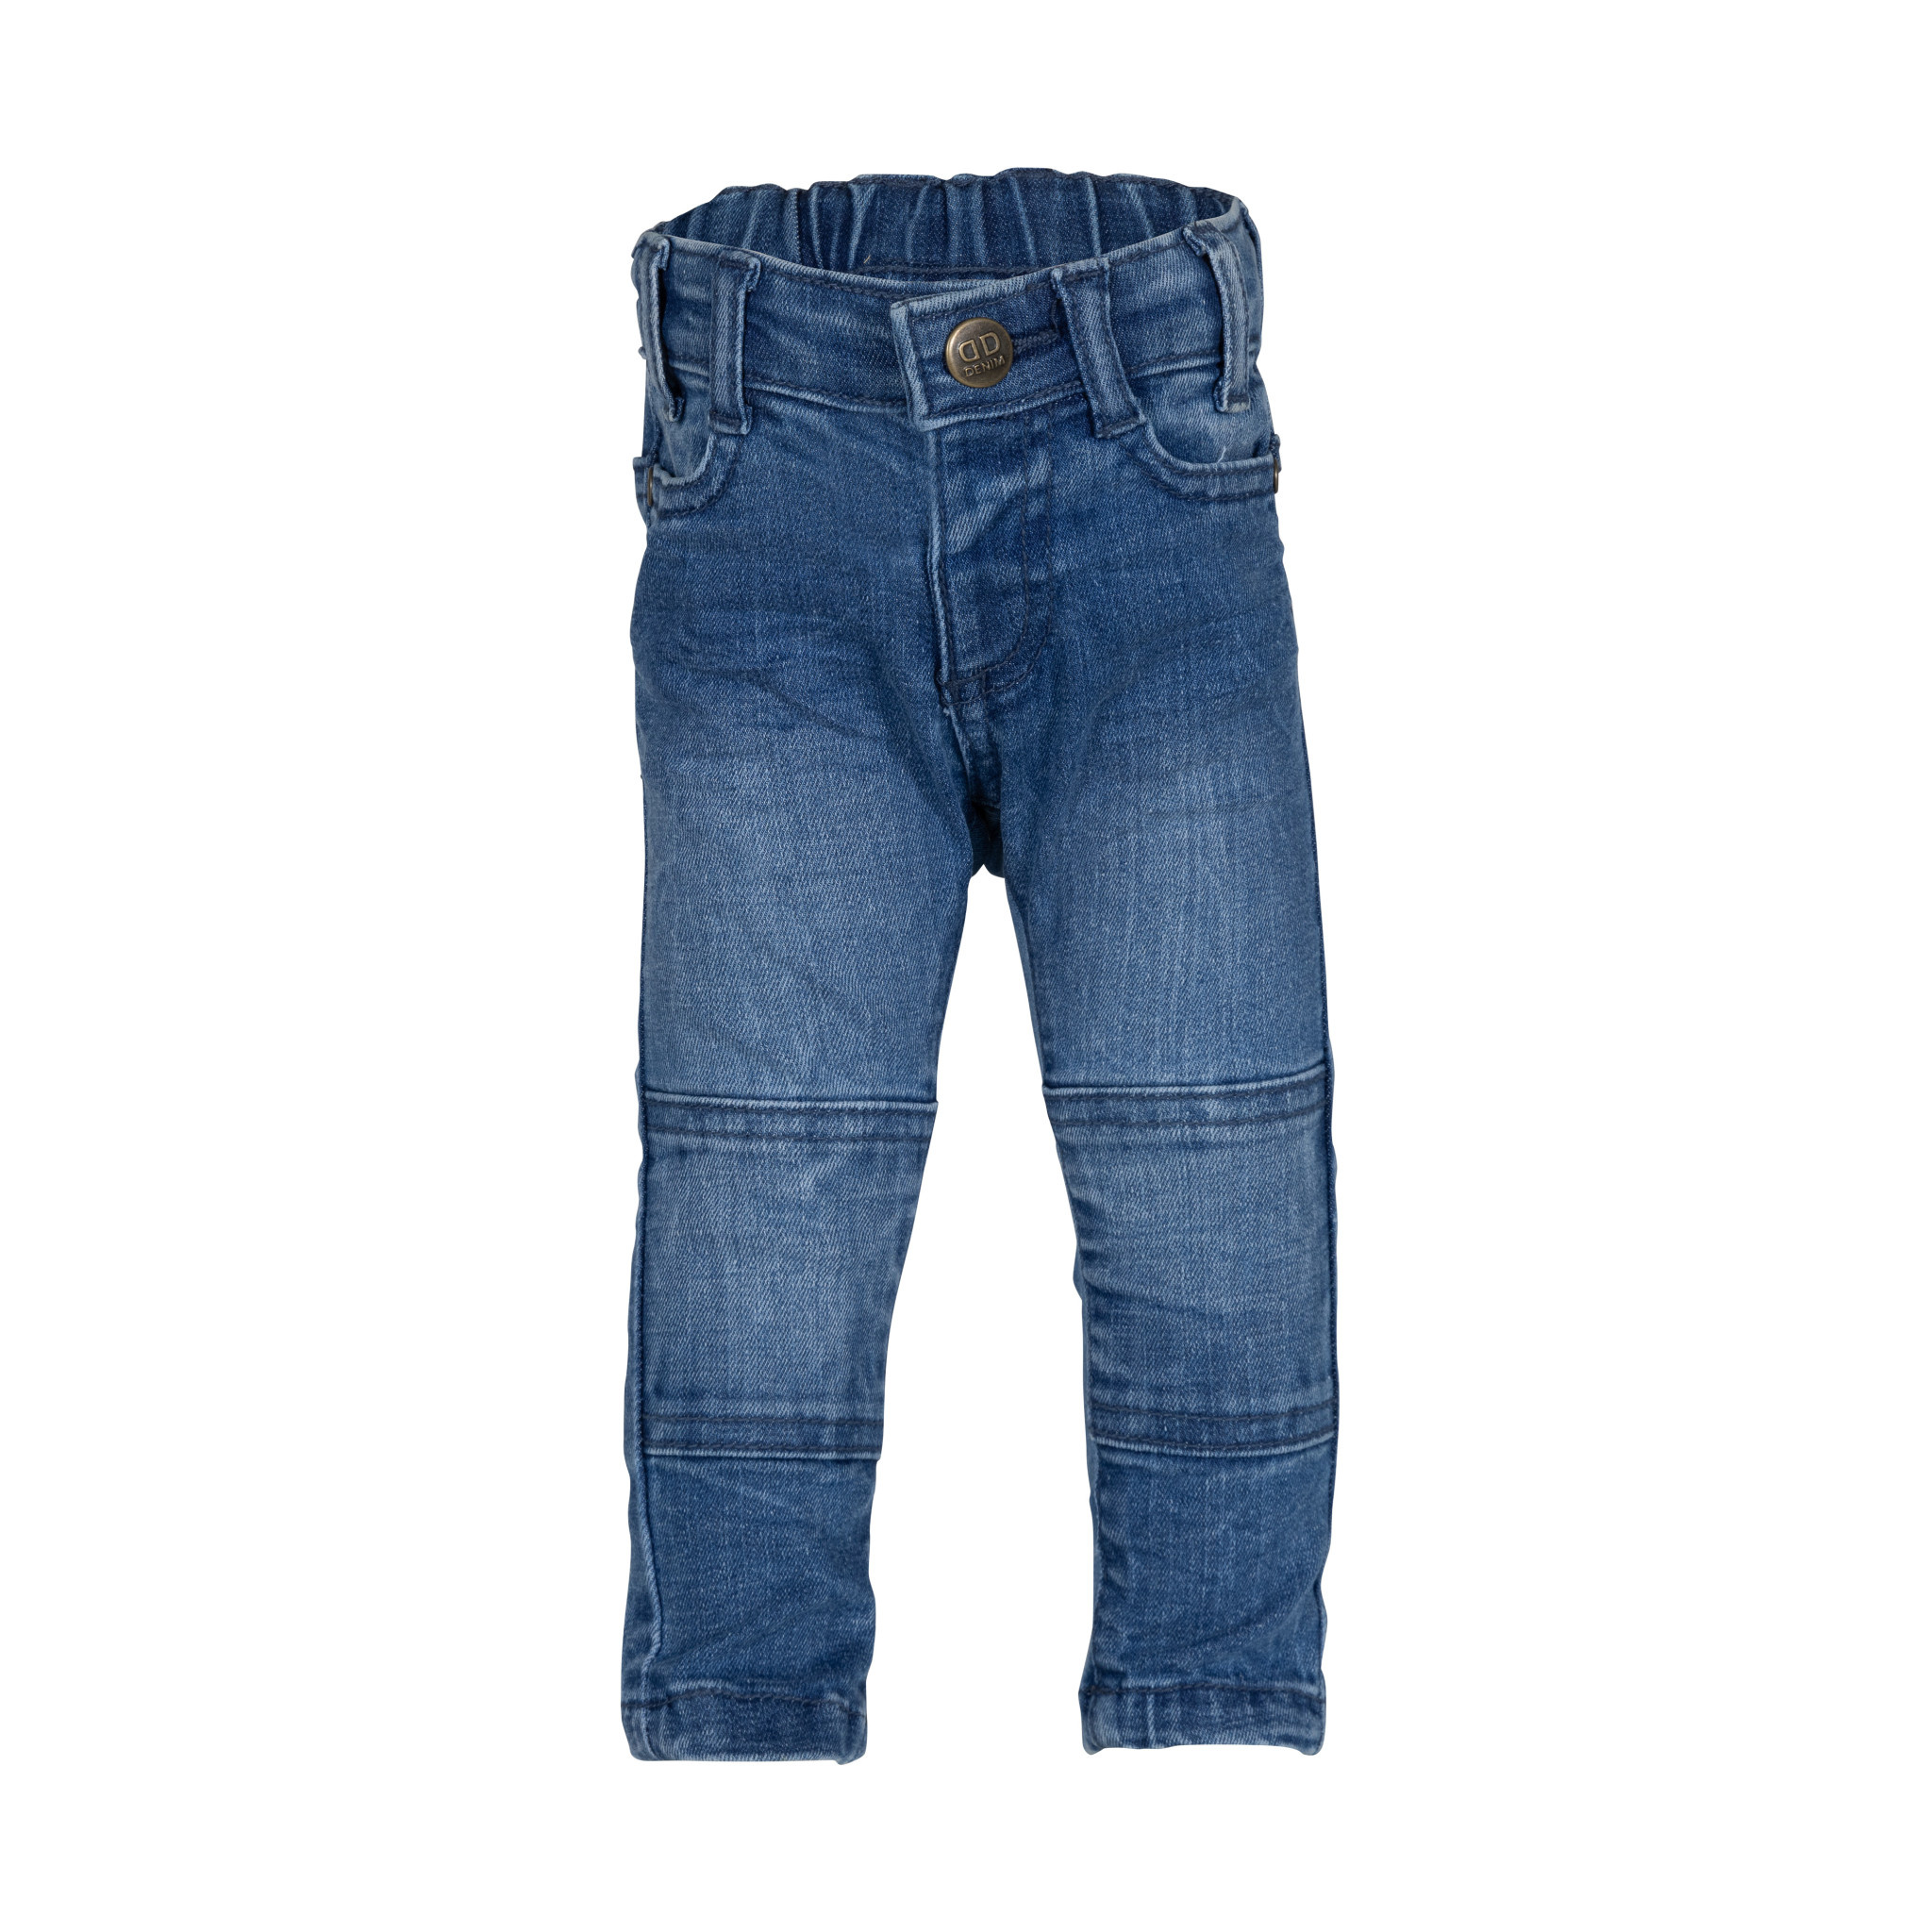 Afbeelding van Dutch Dream Denim Baby jongens jeans mwiko mid blue